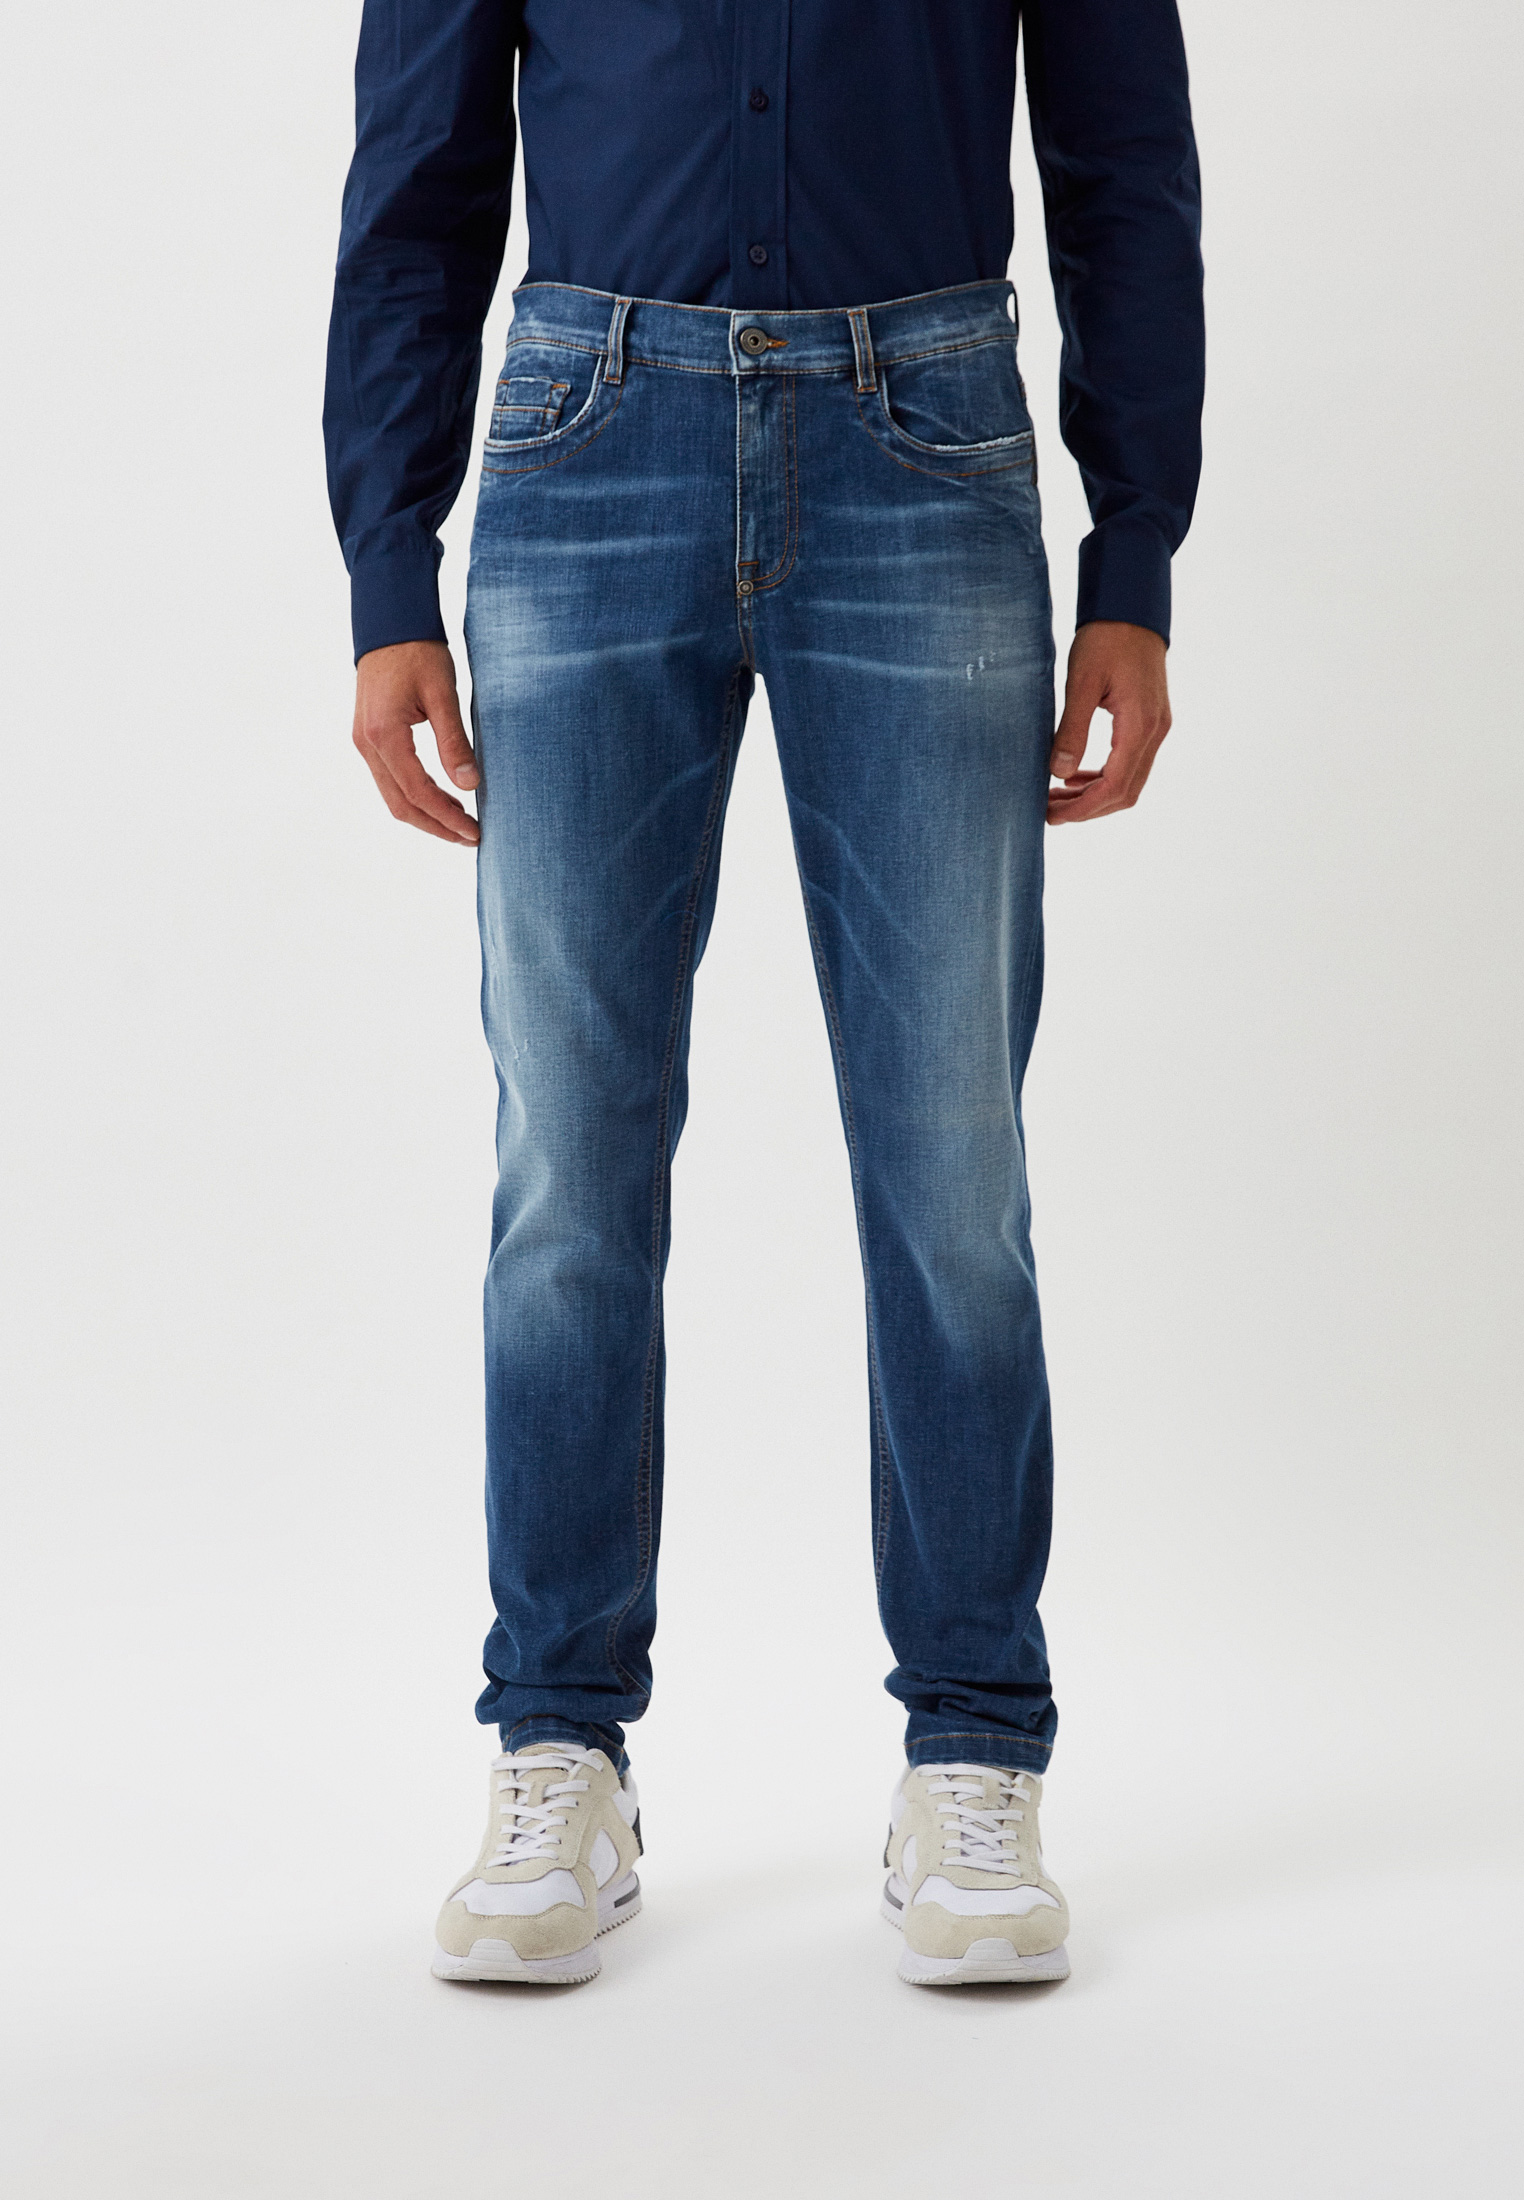 Мужские зауженные джинсы Bikkembergs (Биккембергс) C Q 111 01 S 3511: изображение 9